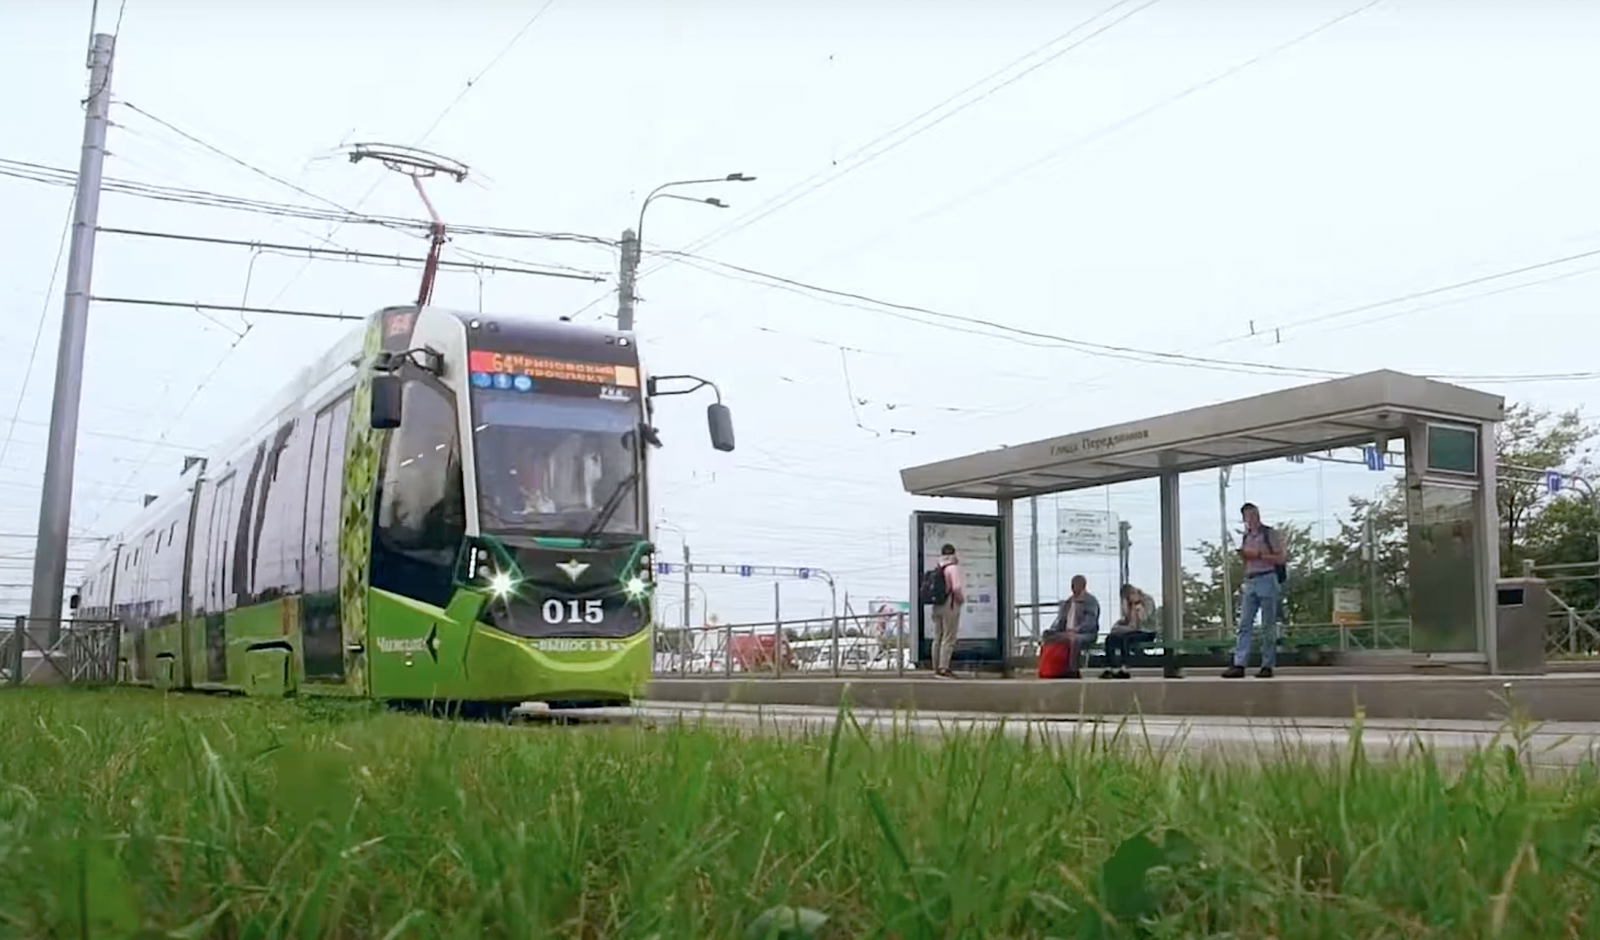 Впервые в России для скоростного общественного транспорта тестируется беспроводная связь нового поколения